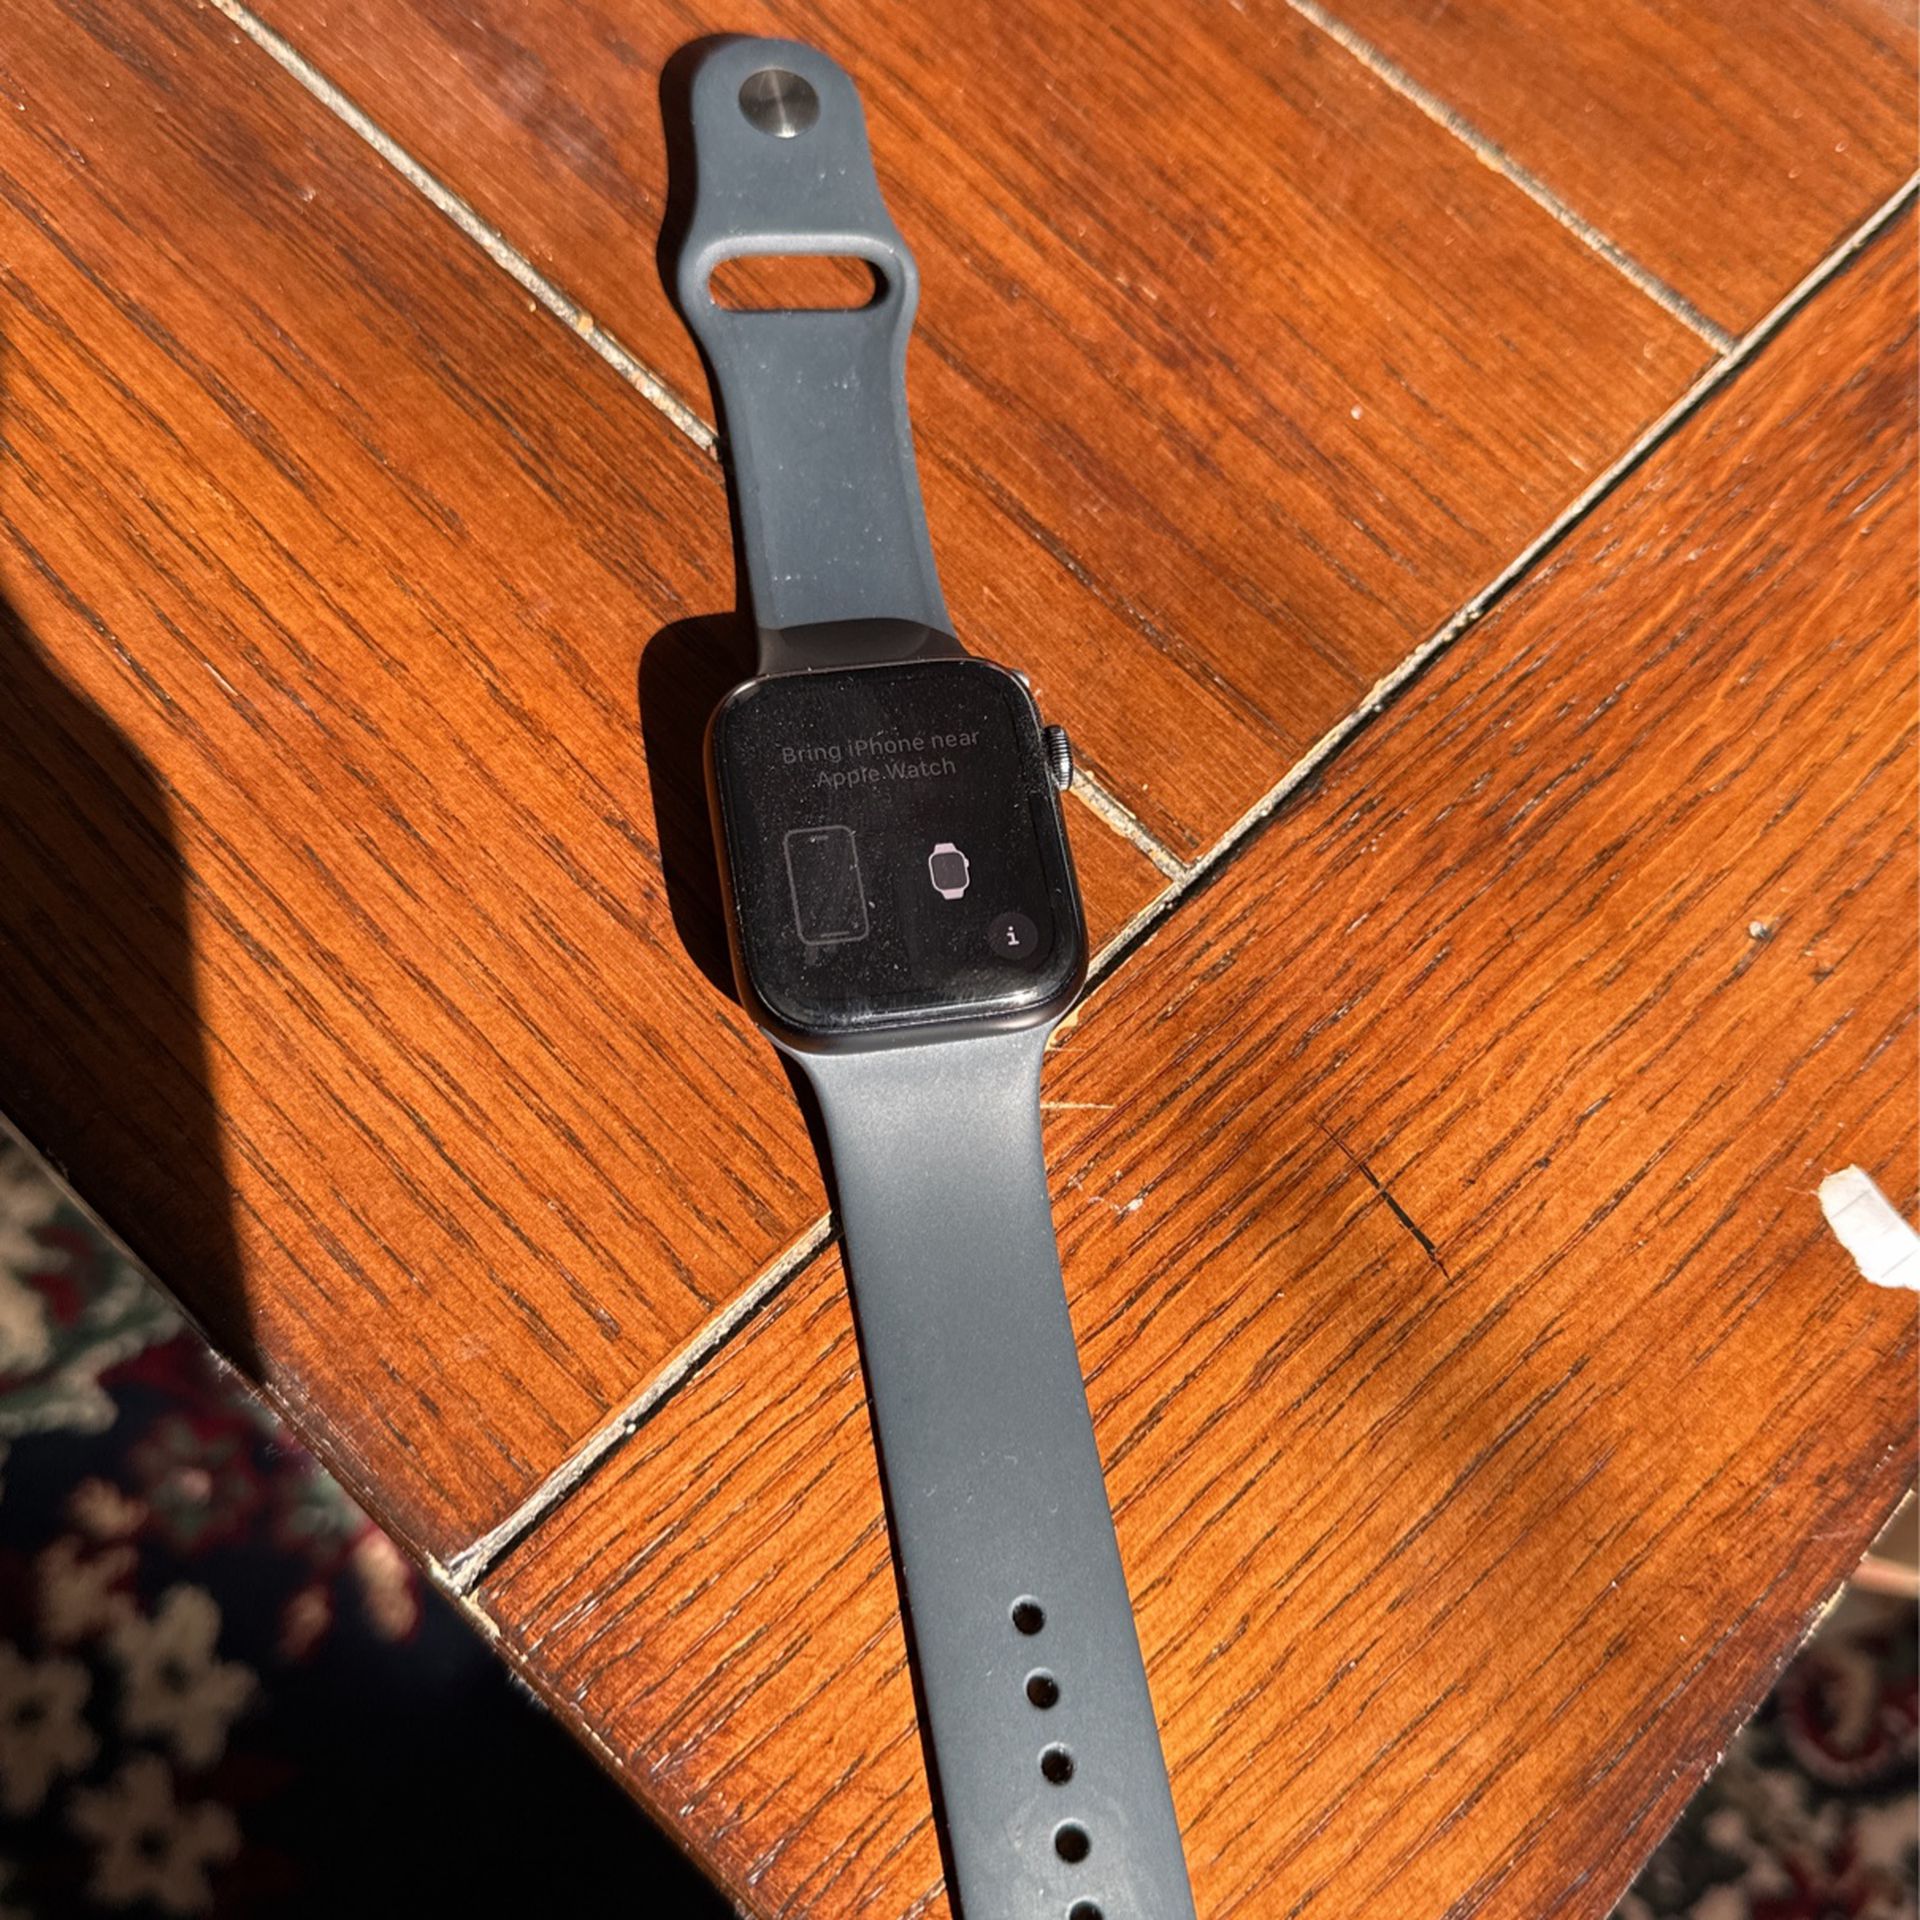 Apple Watch Generation 2 SE